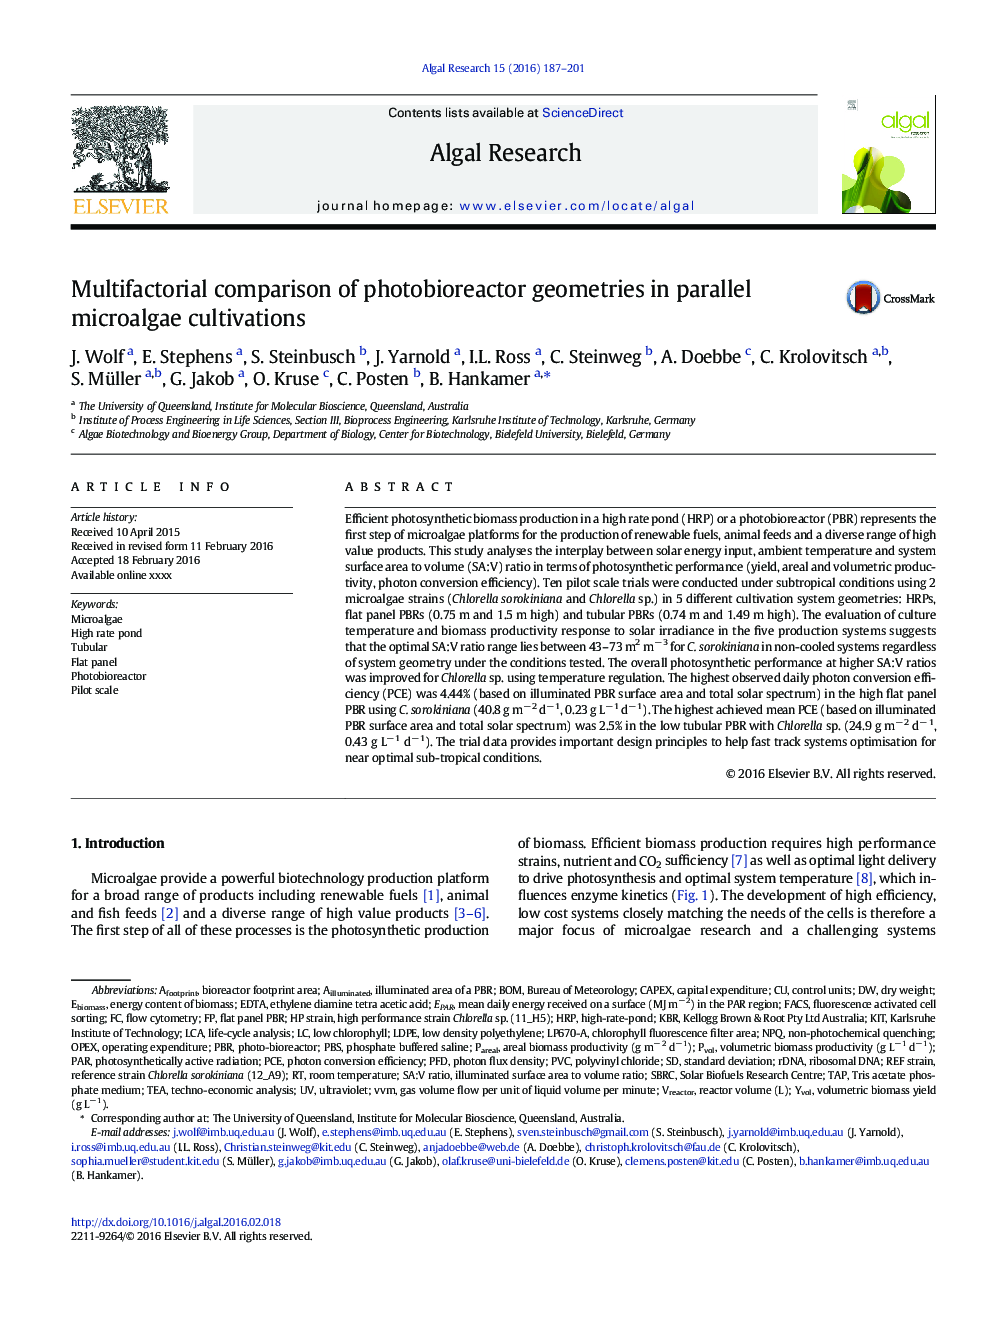 Multifactorial comparison of photobioreactor geometries in parallel microalgae cultivations